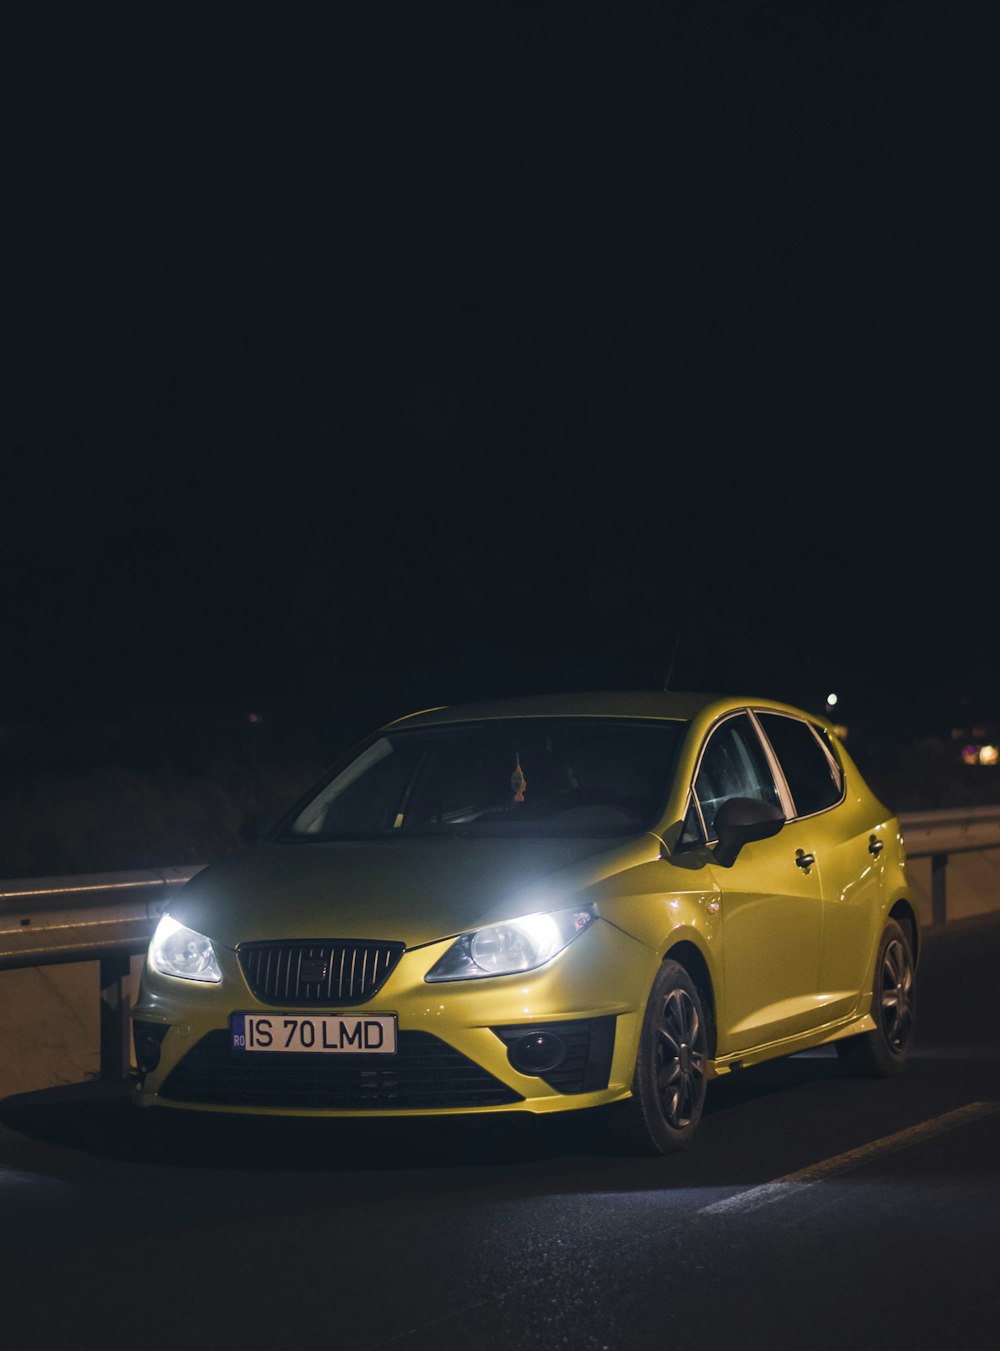 une voiture jaune roulant sur une route la nuit